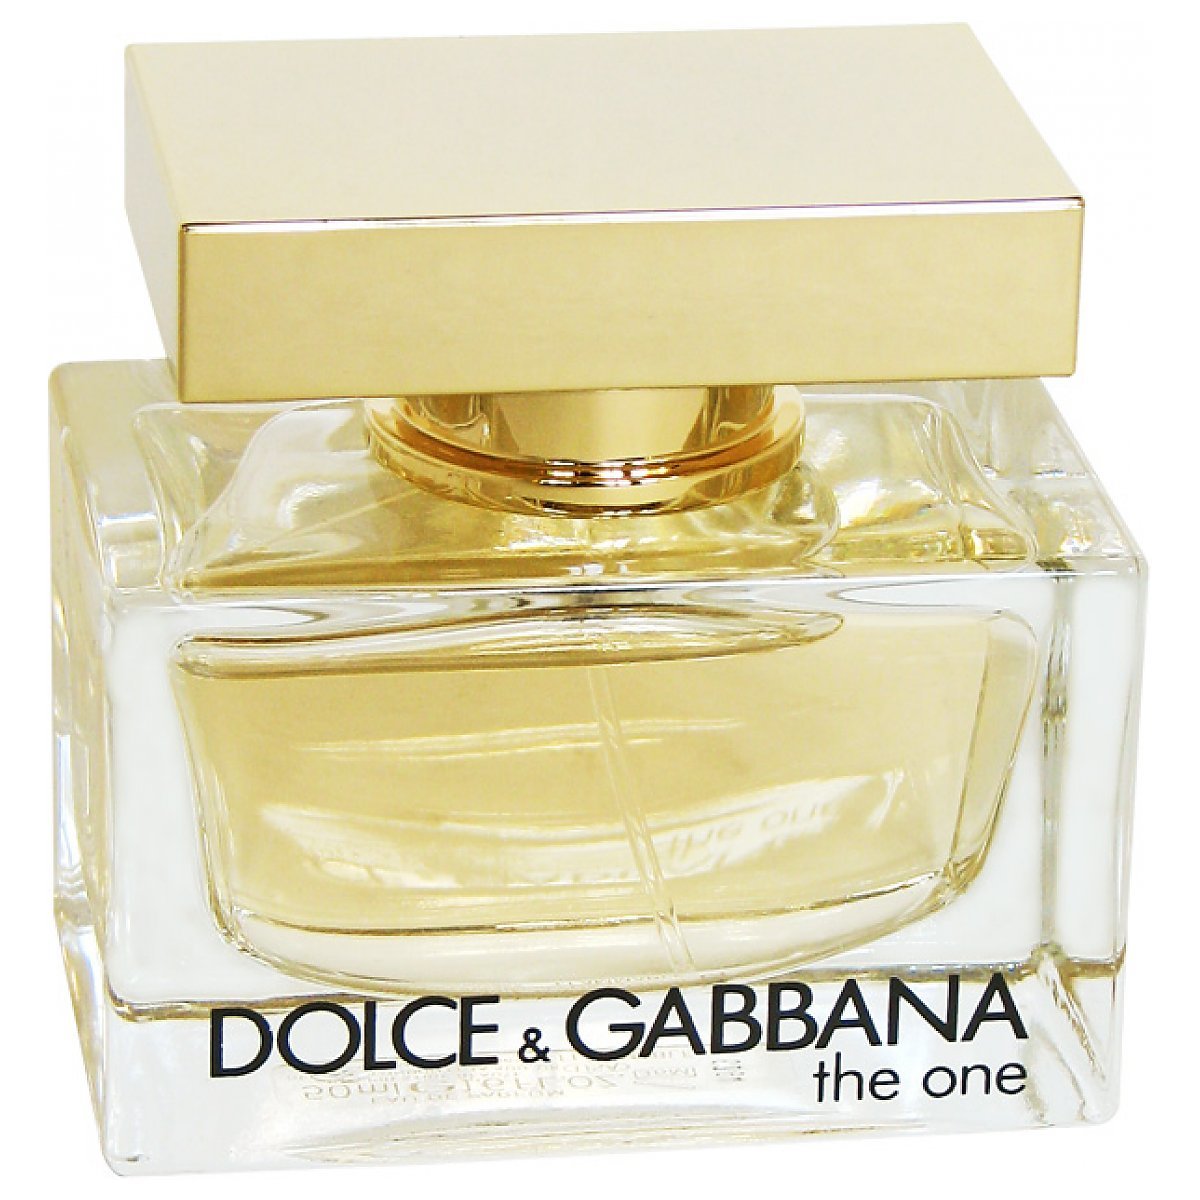 Dolce&Gabbana The One Woda perfumowana spray 30ml - Perfumeria Dolce.pl